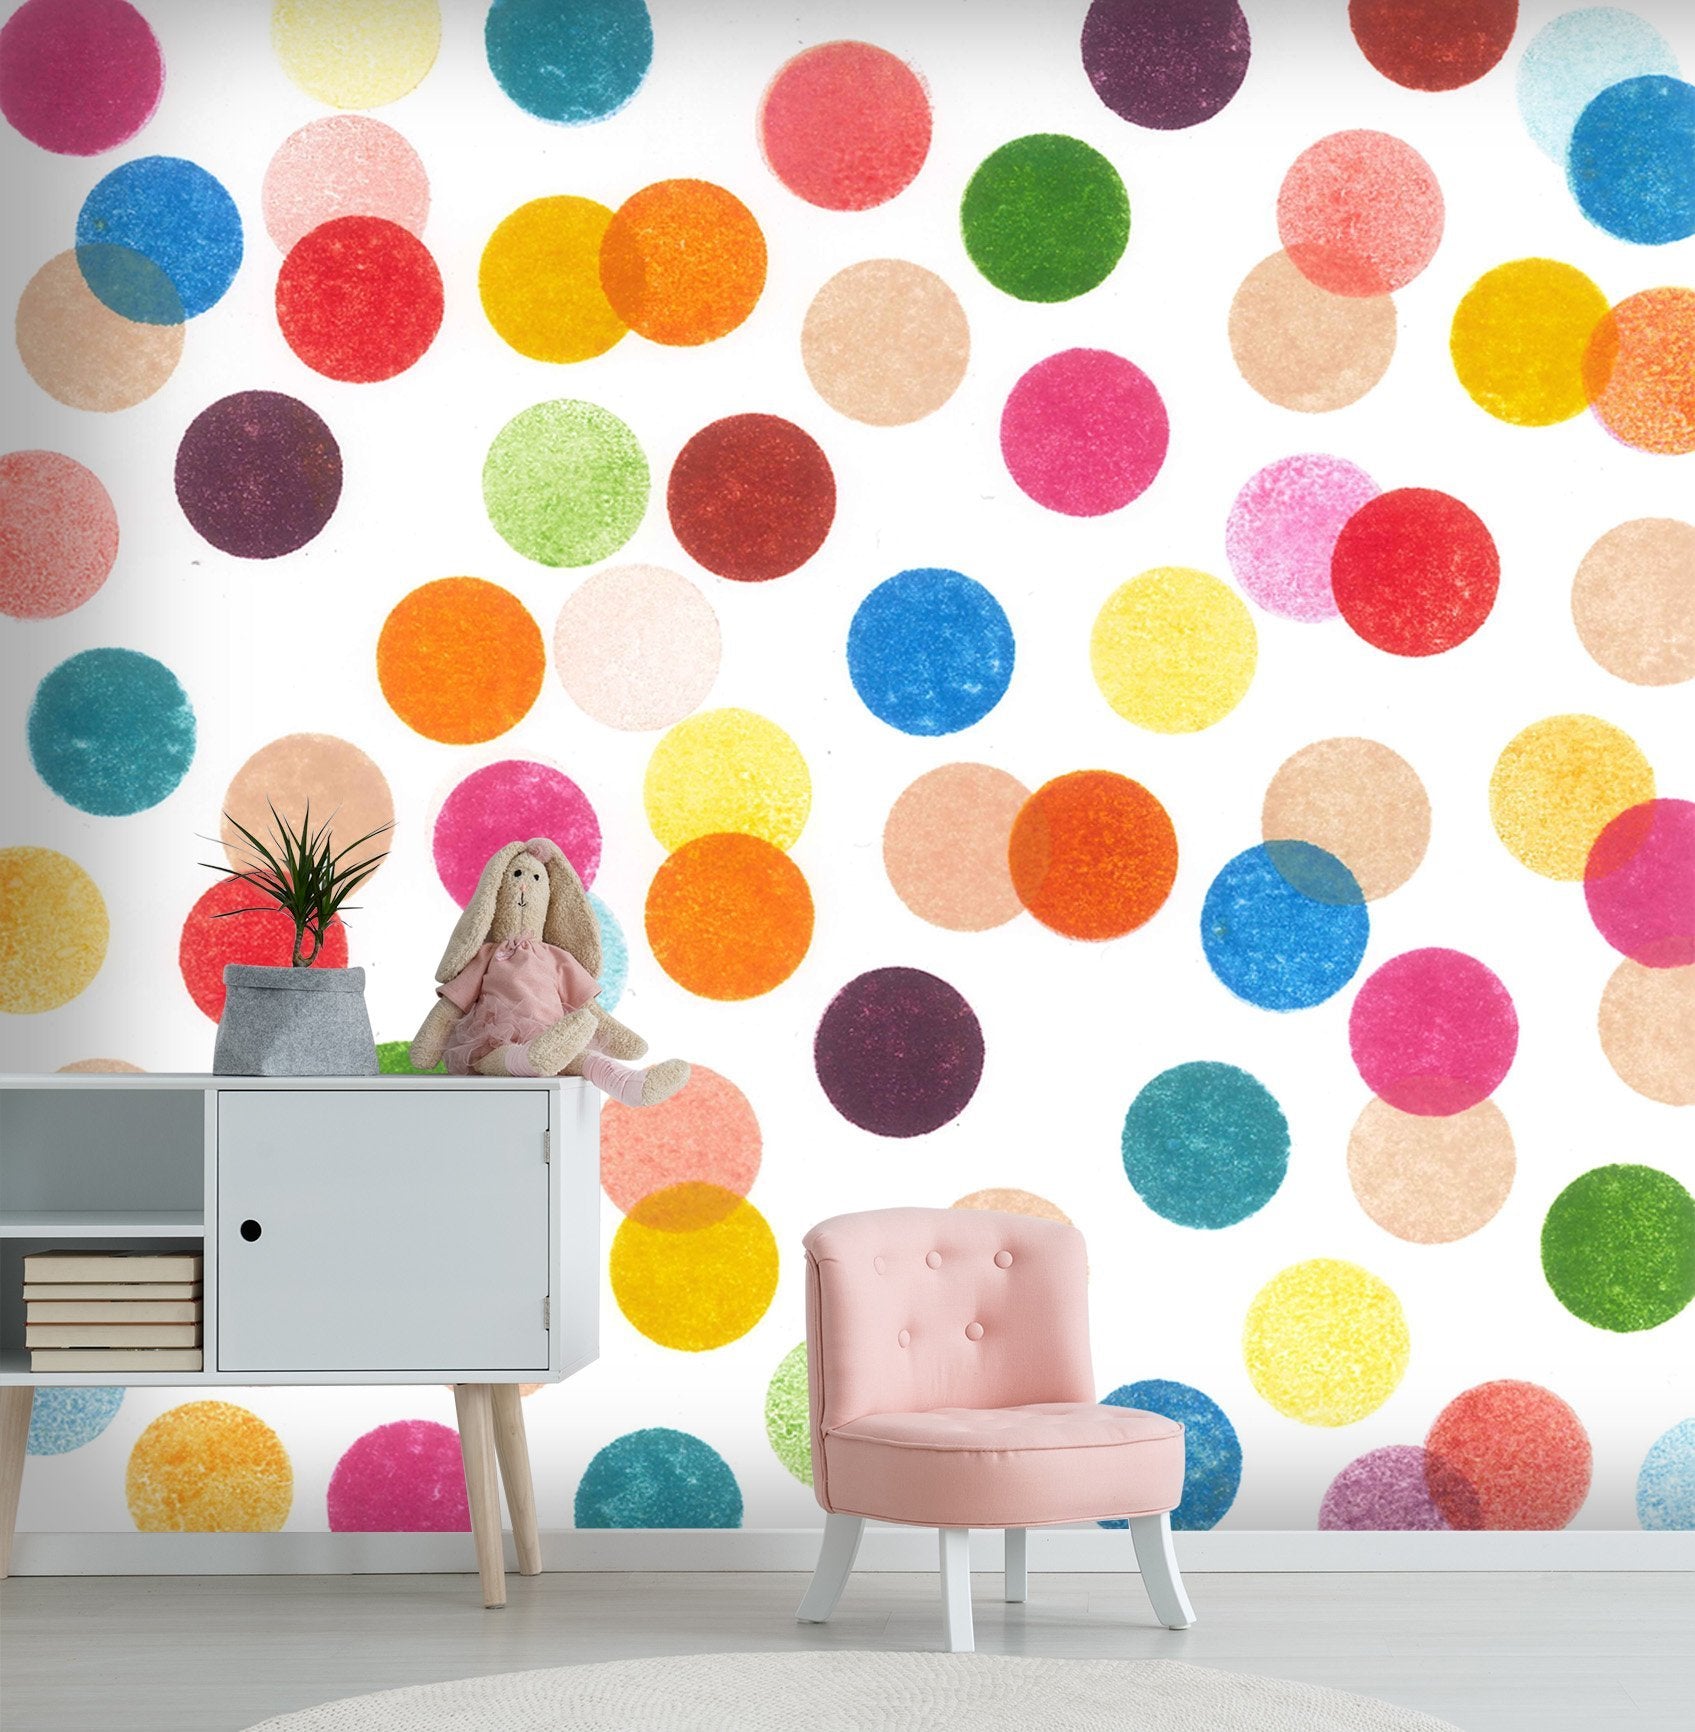 3D Colorful Dots 022 Wallpaper AJ Wallpaper 